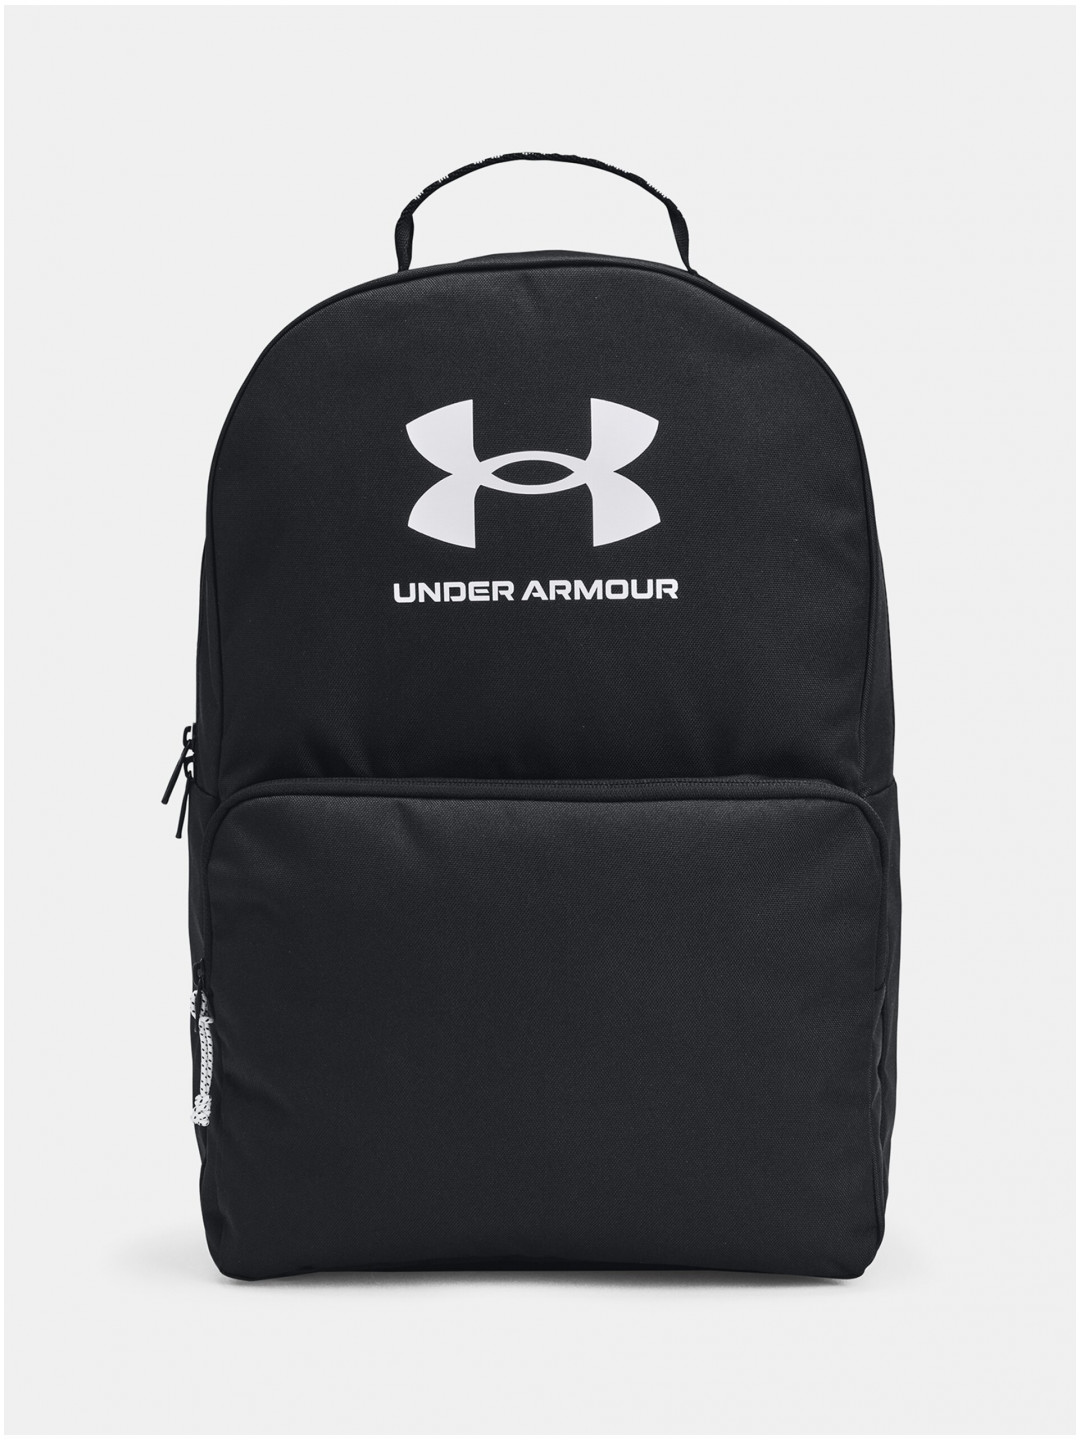 Černý sportovní batoh 25 5 l Under Armour UA Loudon Backpack